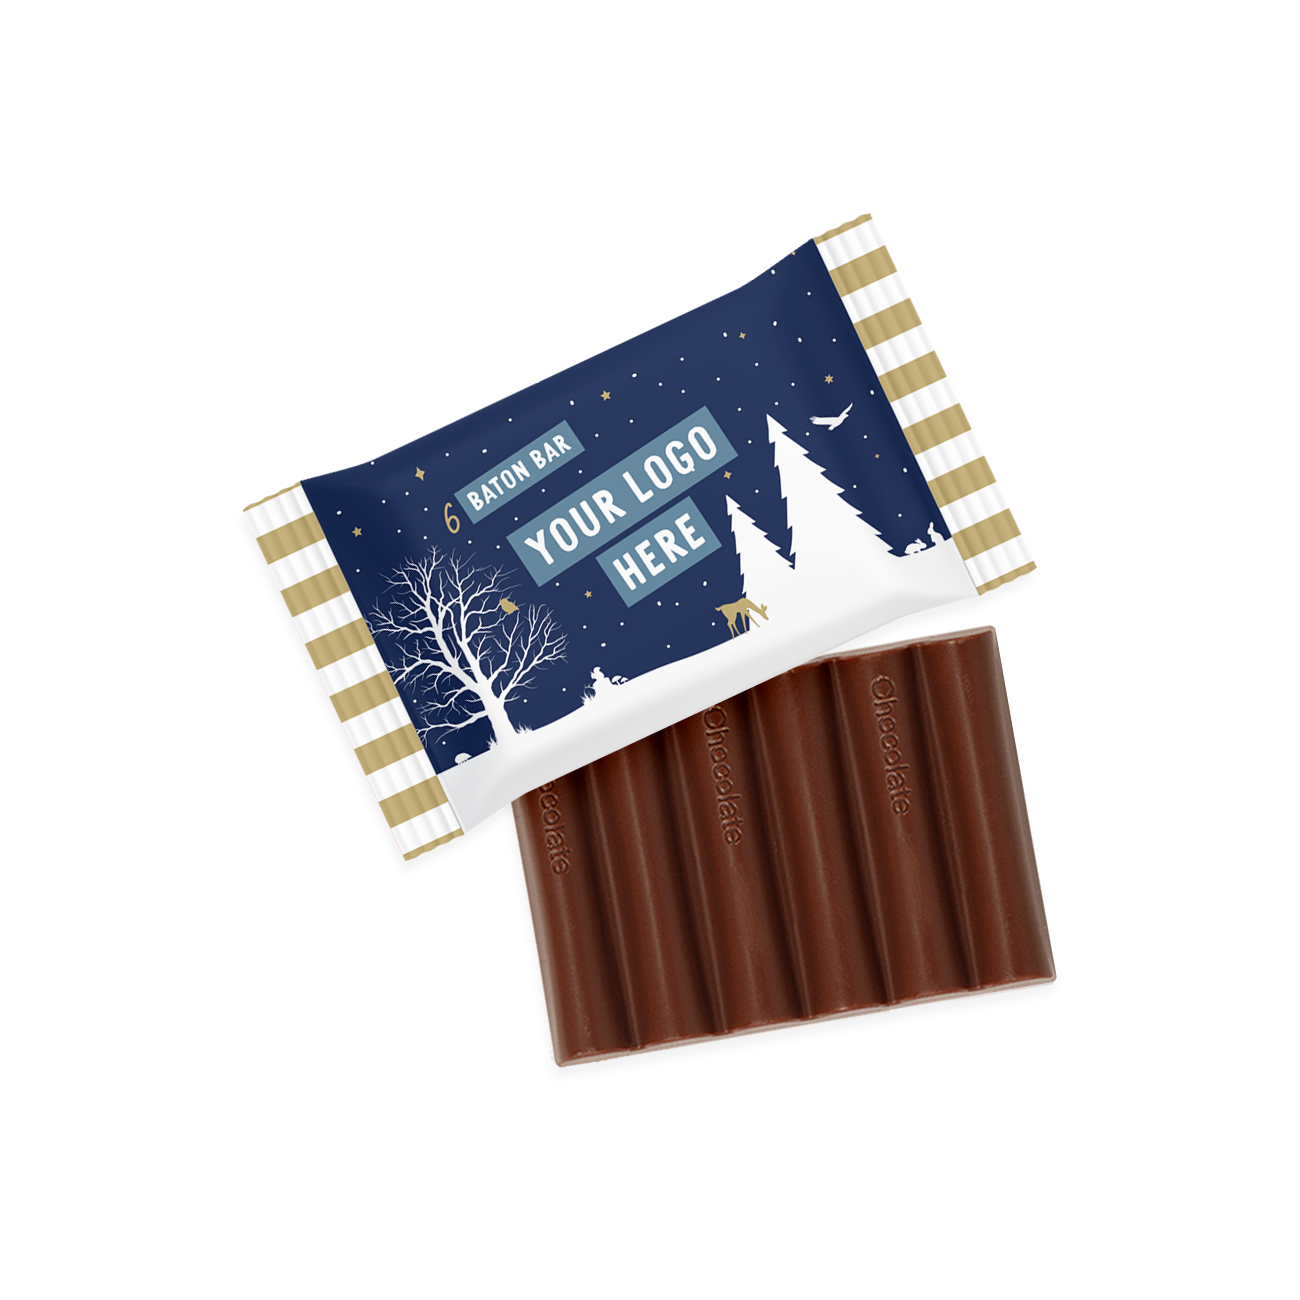 Winter Collection – 6 Baton Bar - Milk Chocolate - 41% Cocoa